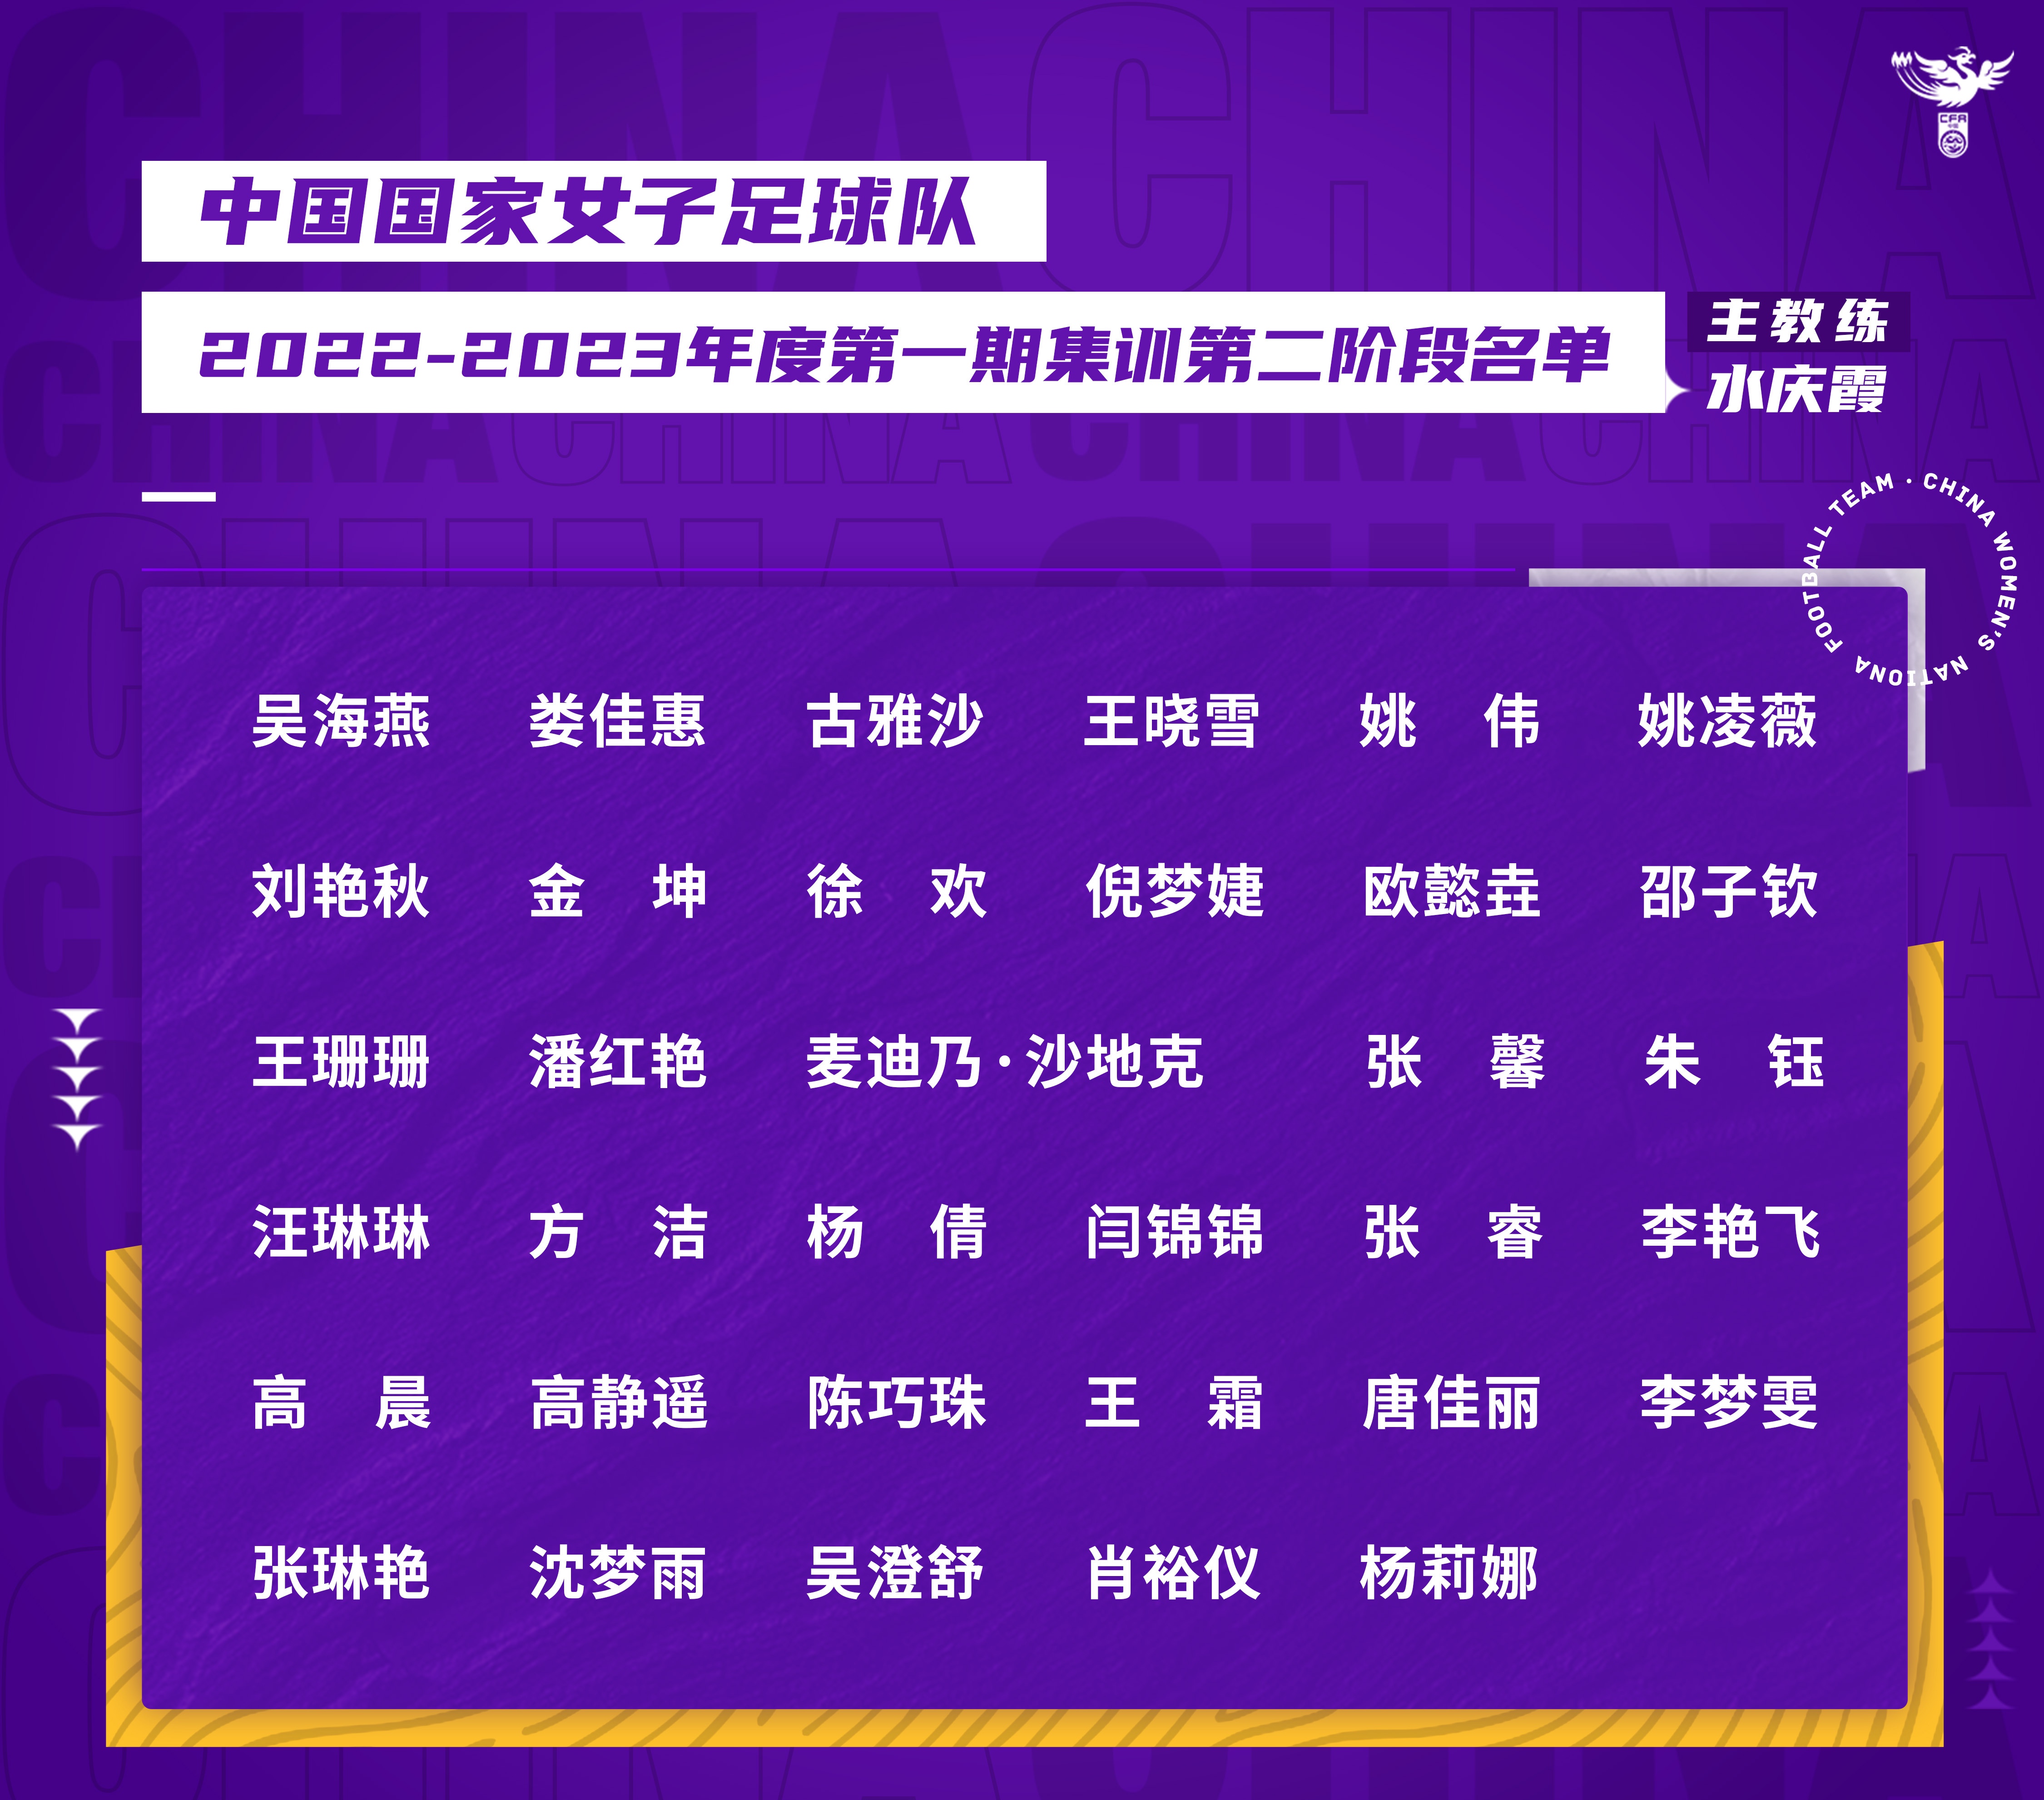 中国女足队员名单图片